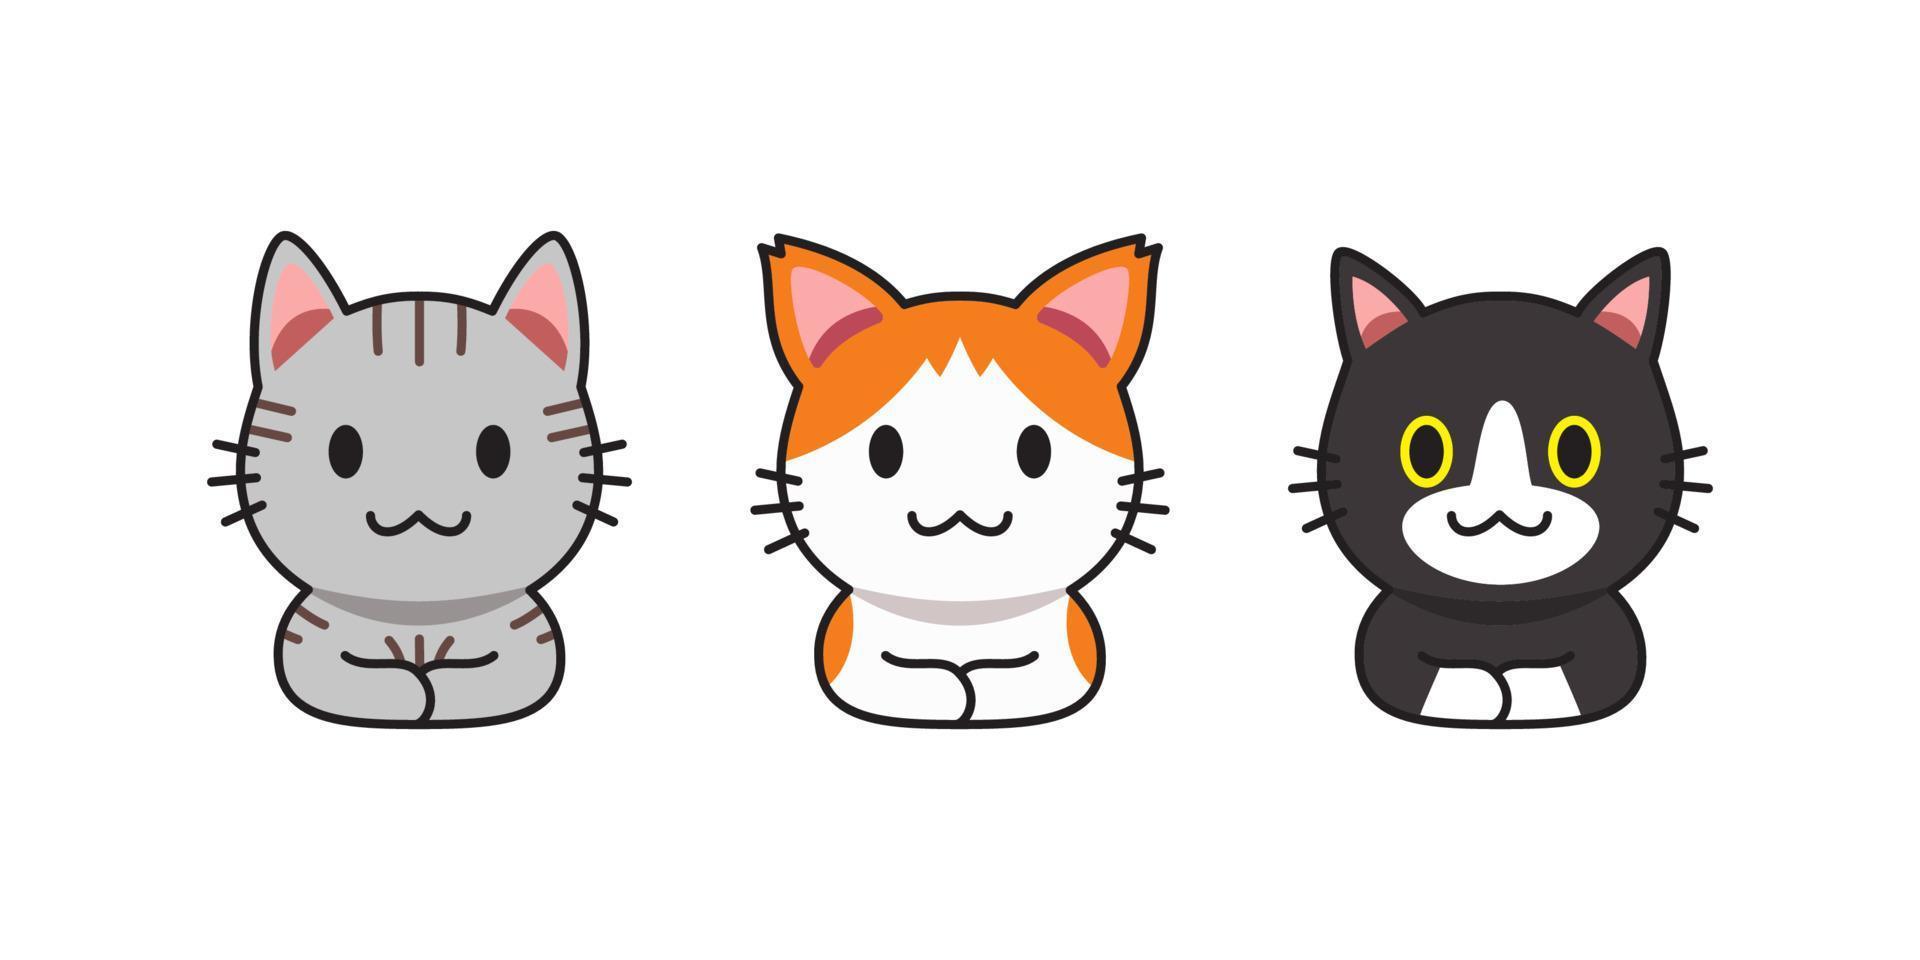 conjunto de gatos lindos de dibujos animados de vector